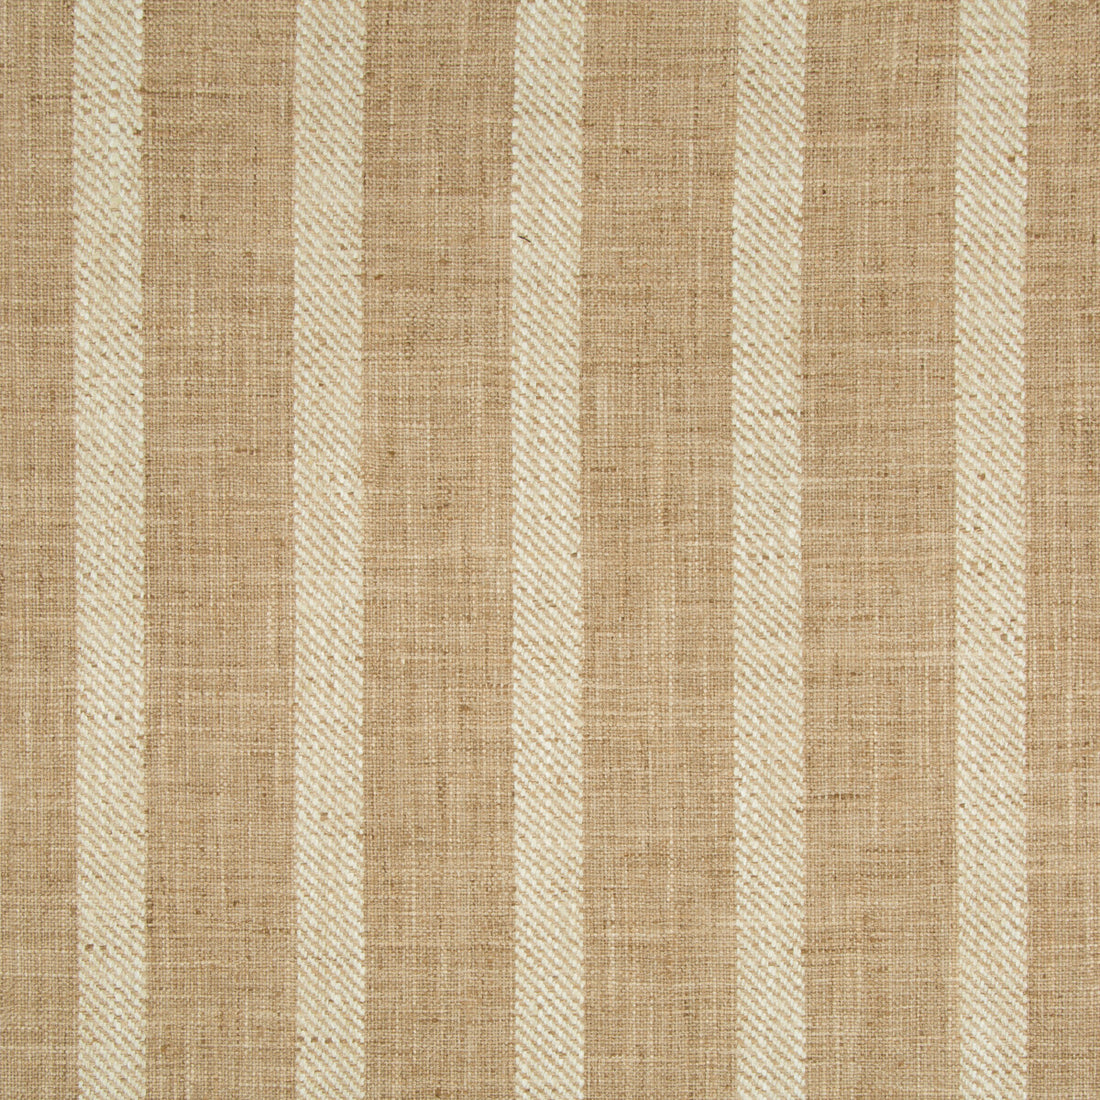 Kravet Basics fabric in 34985-16 color - pattern 34985.16.0 - by Kravet Basics